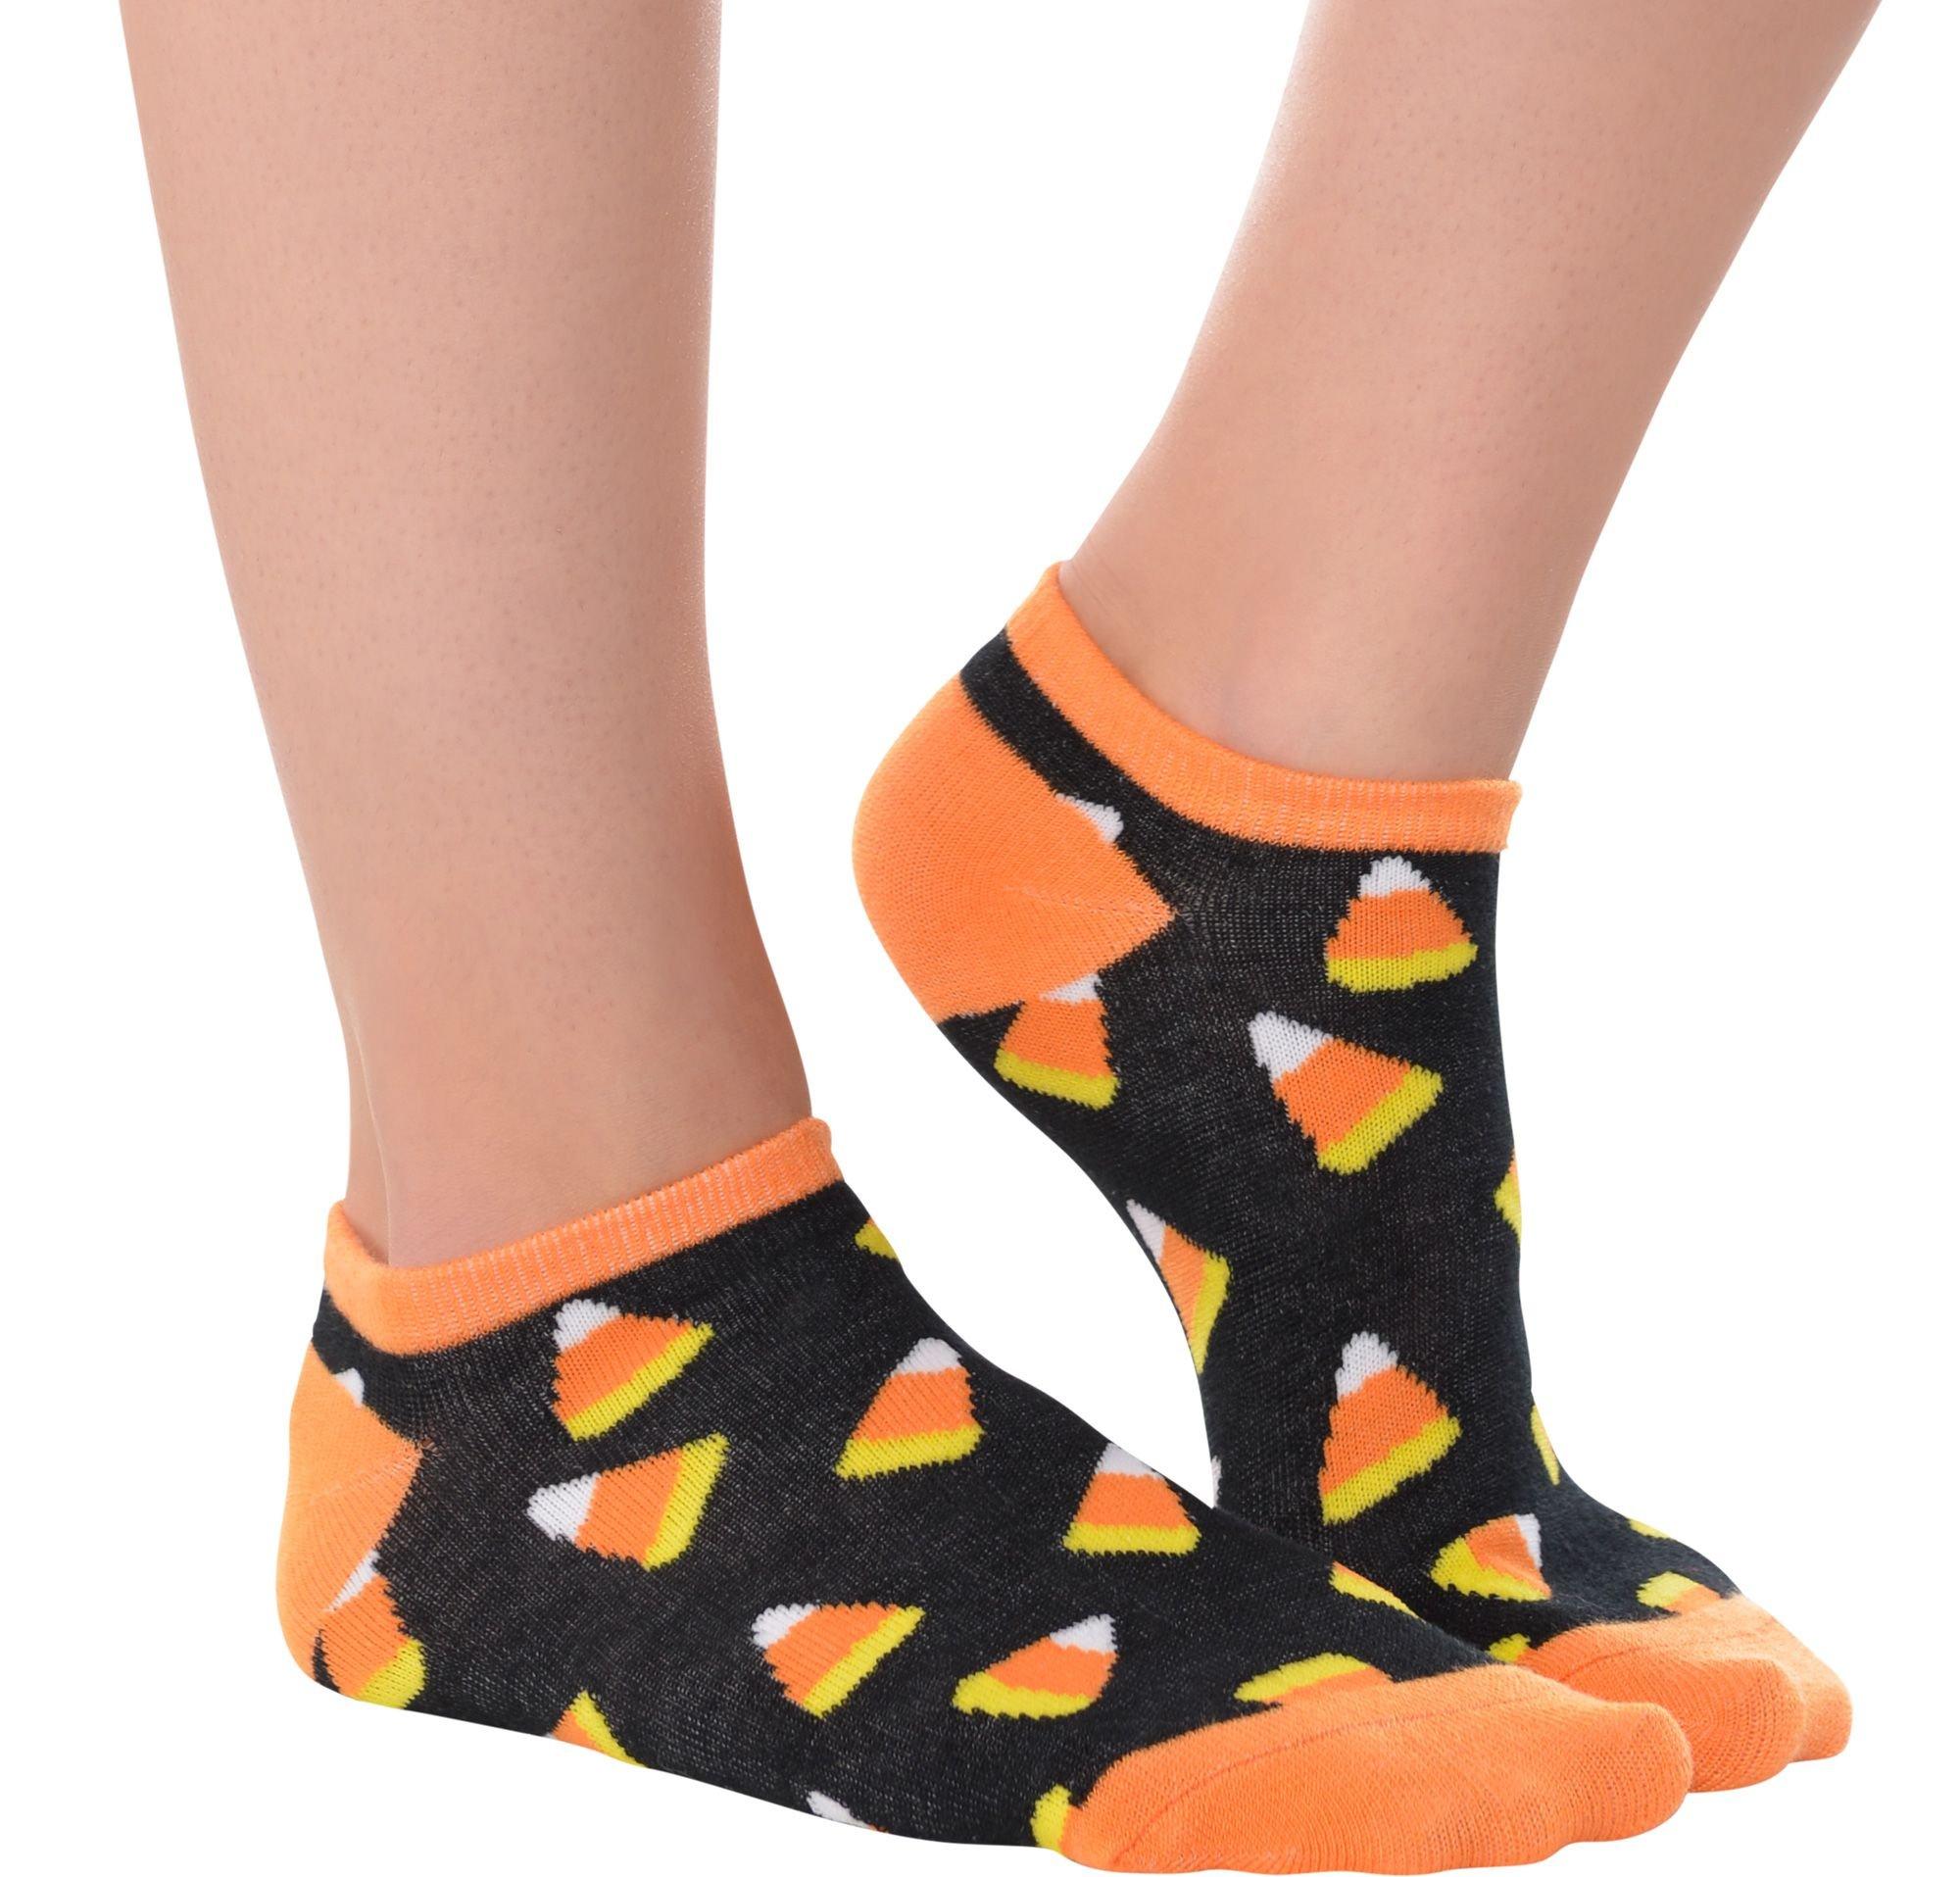 Corn Pops Cool Socks